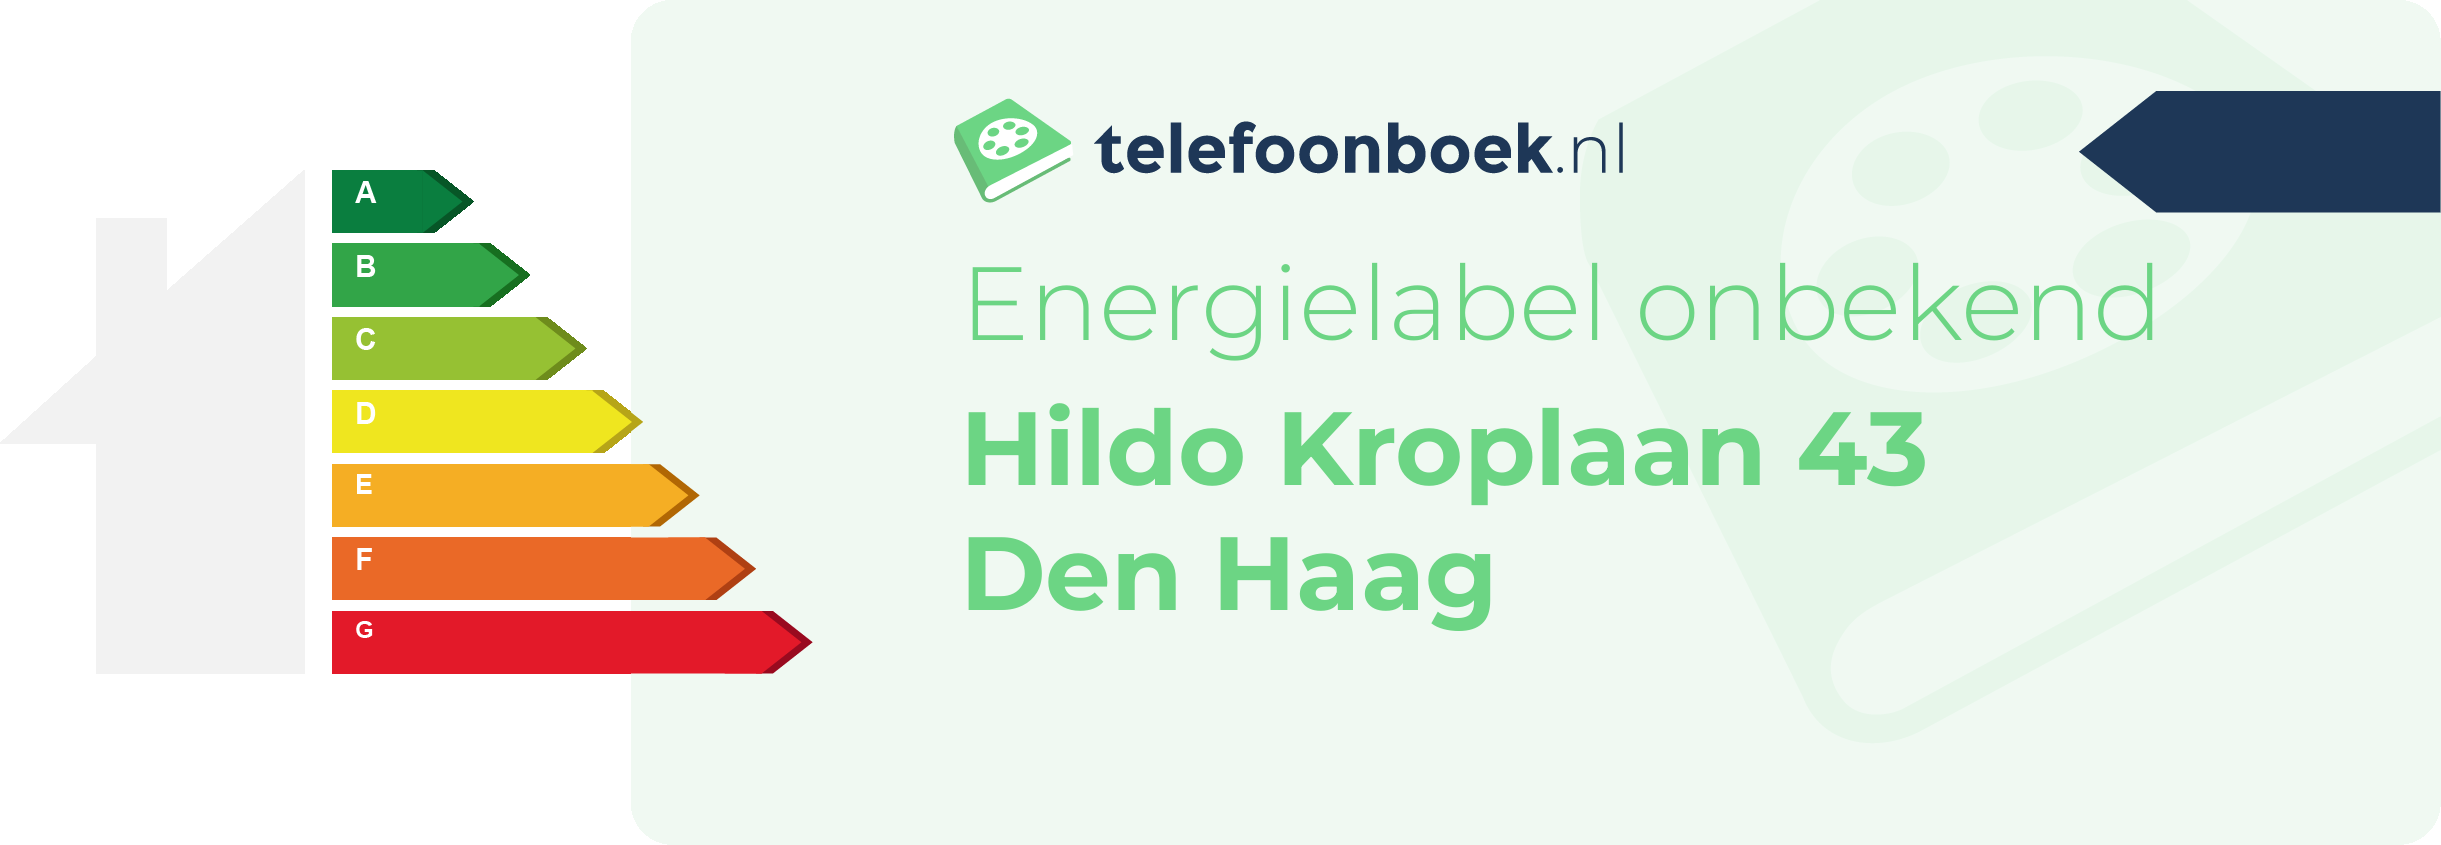 Energielabel Hildo Kroplaan 43 Den Haag